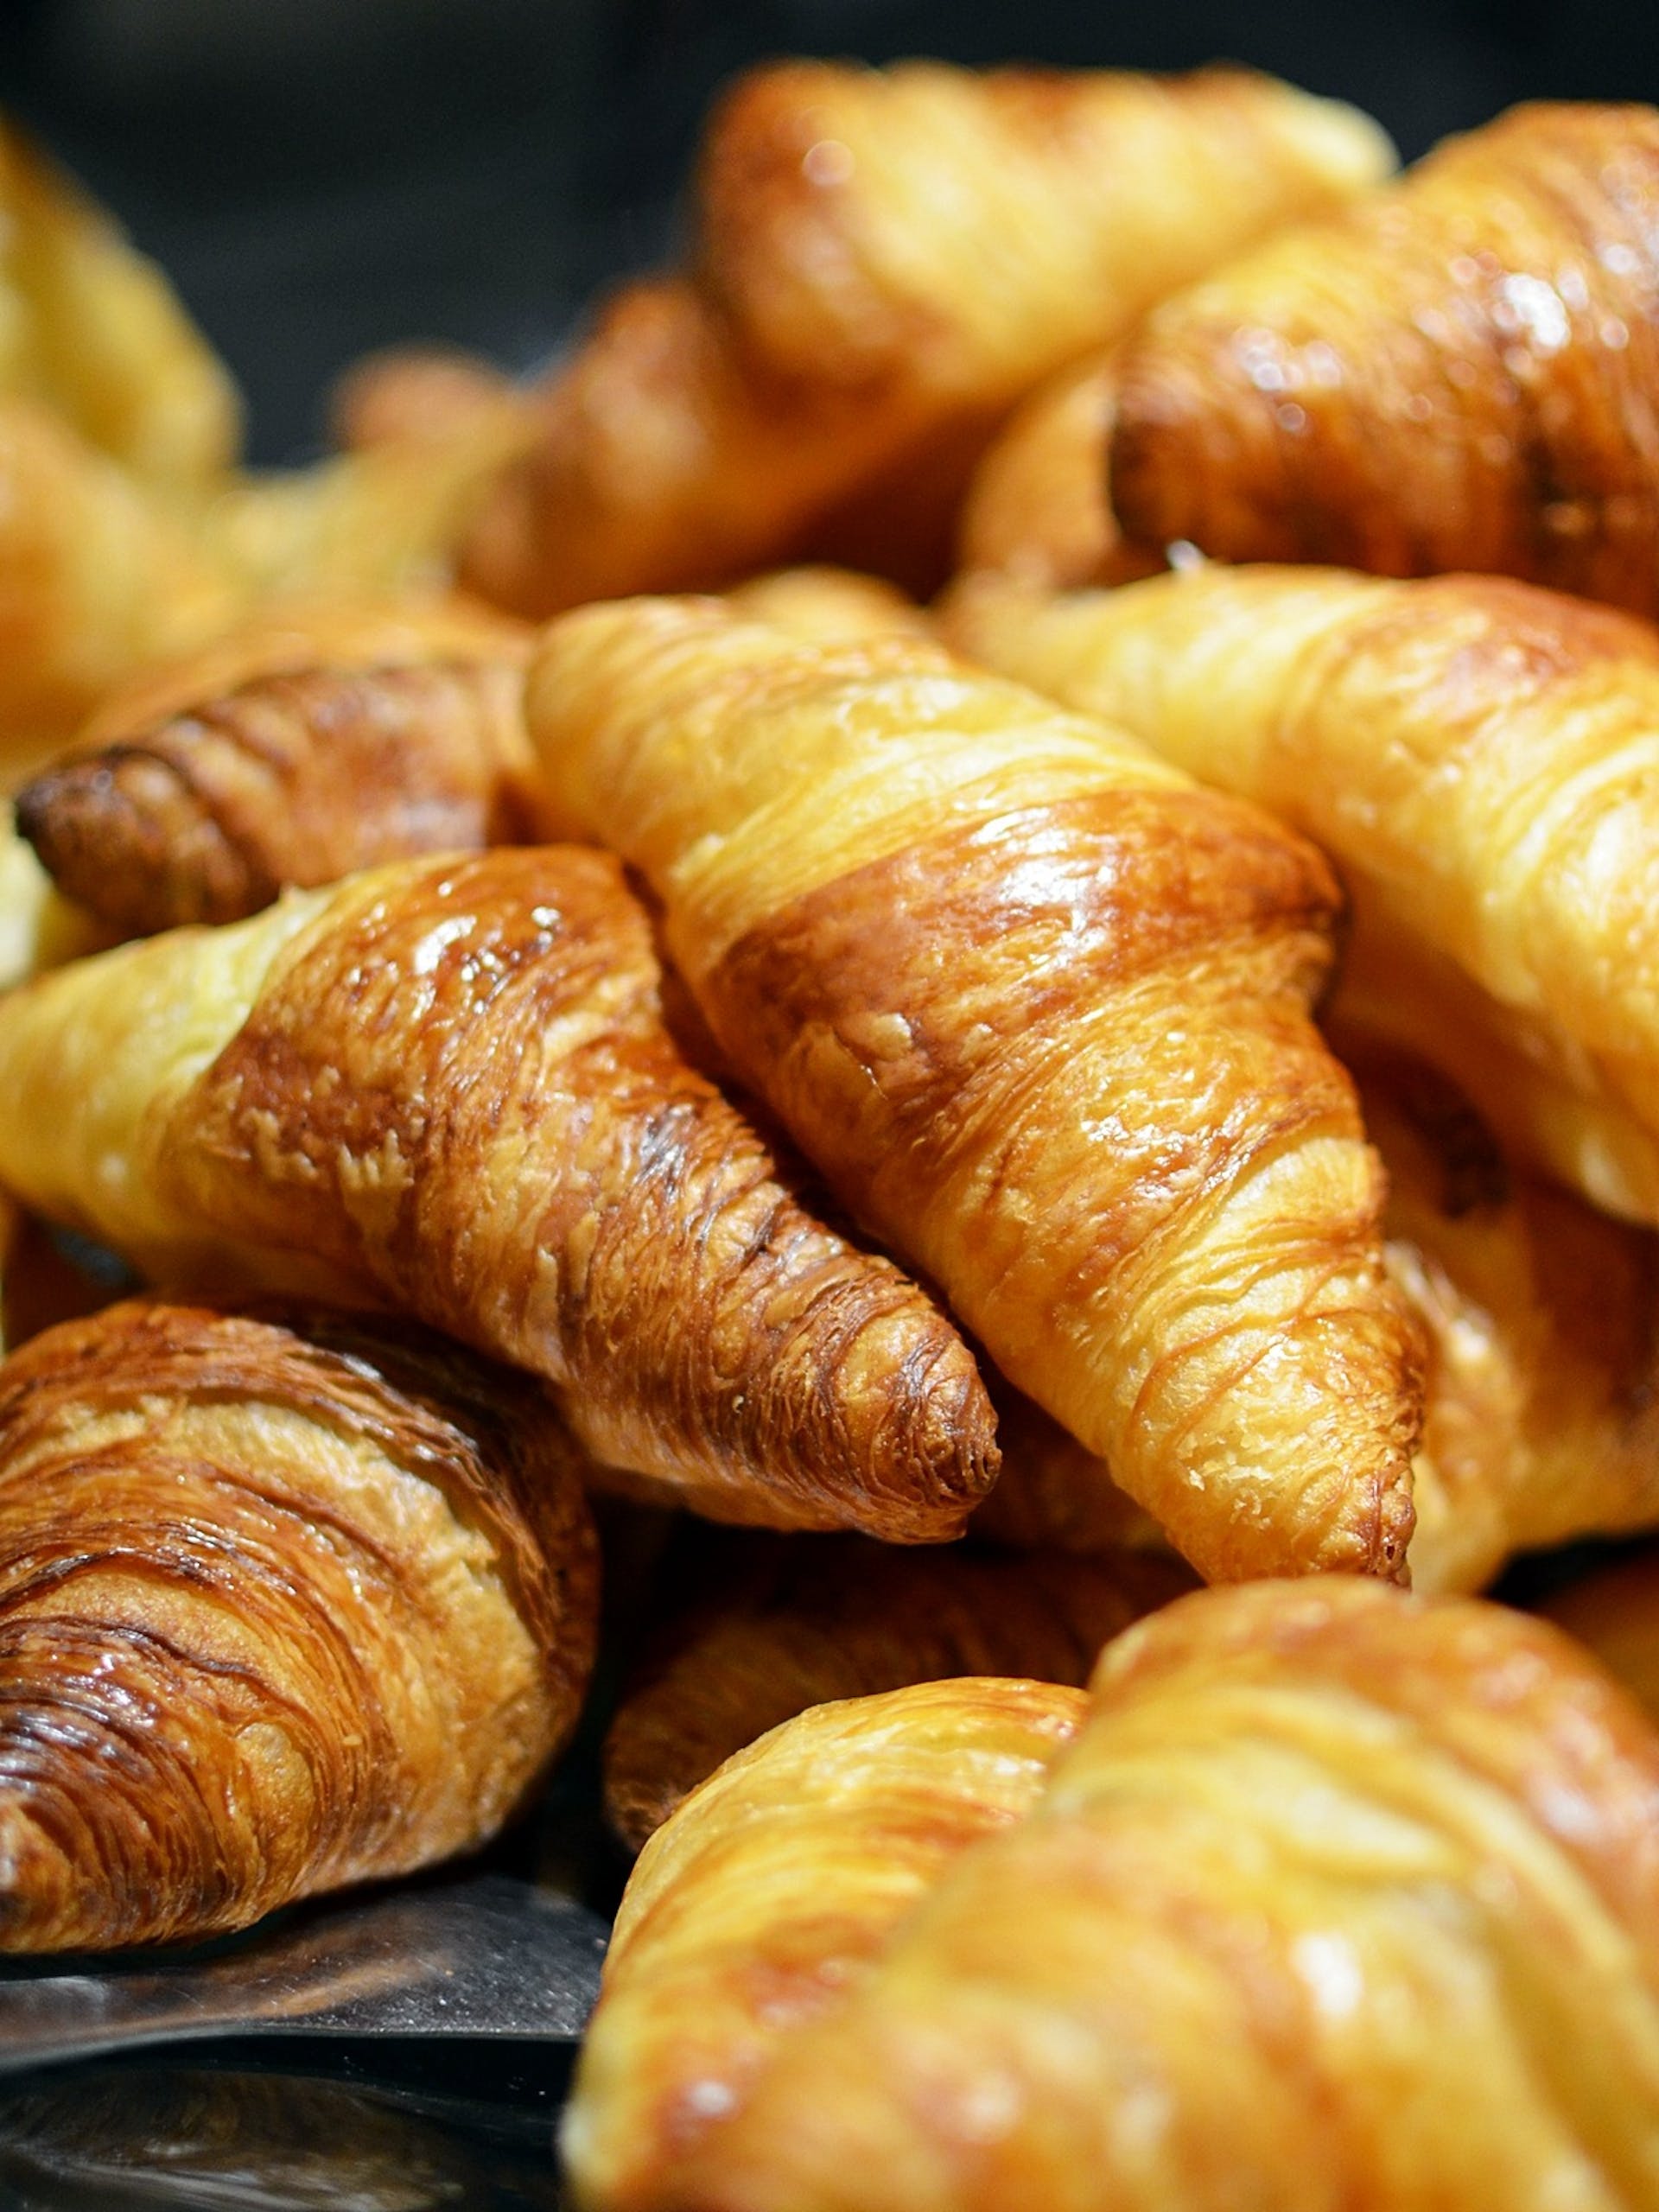 Croissants | Source: Pexels